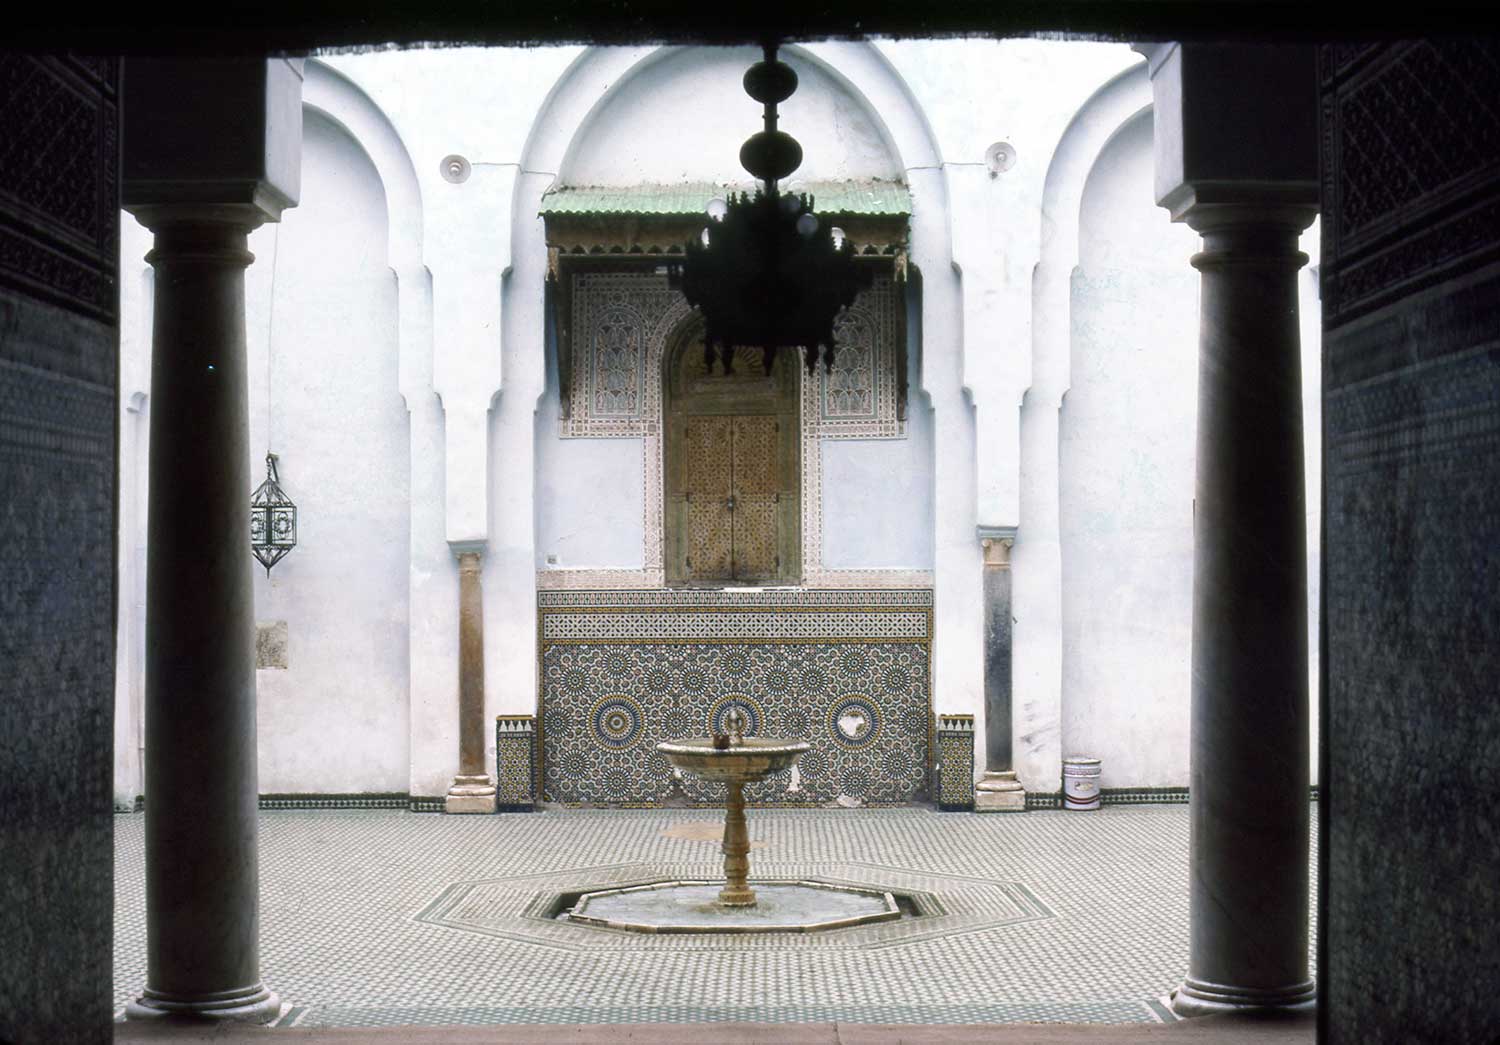 Zawiya Sidi Bel Abbes - Mausoleum, fountain